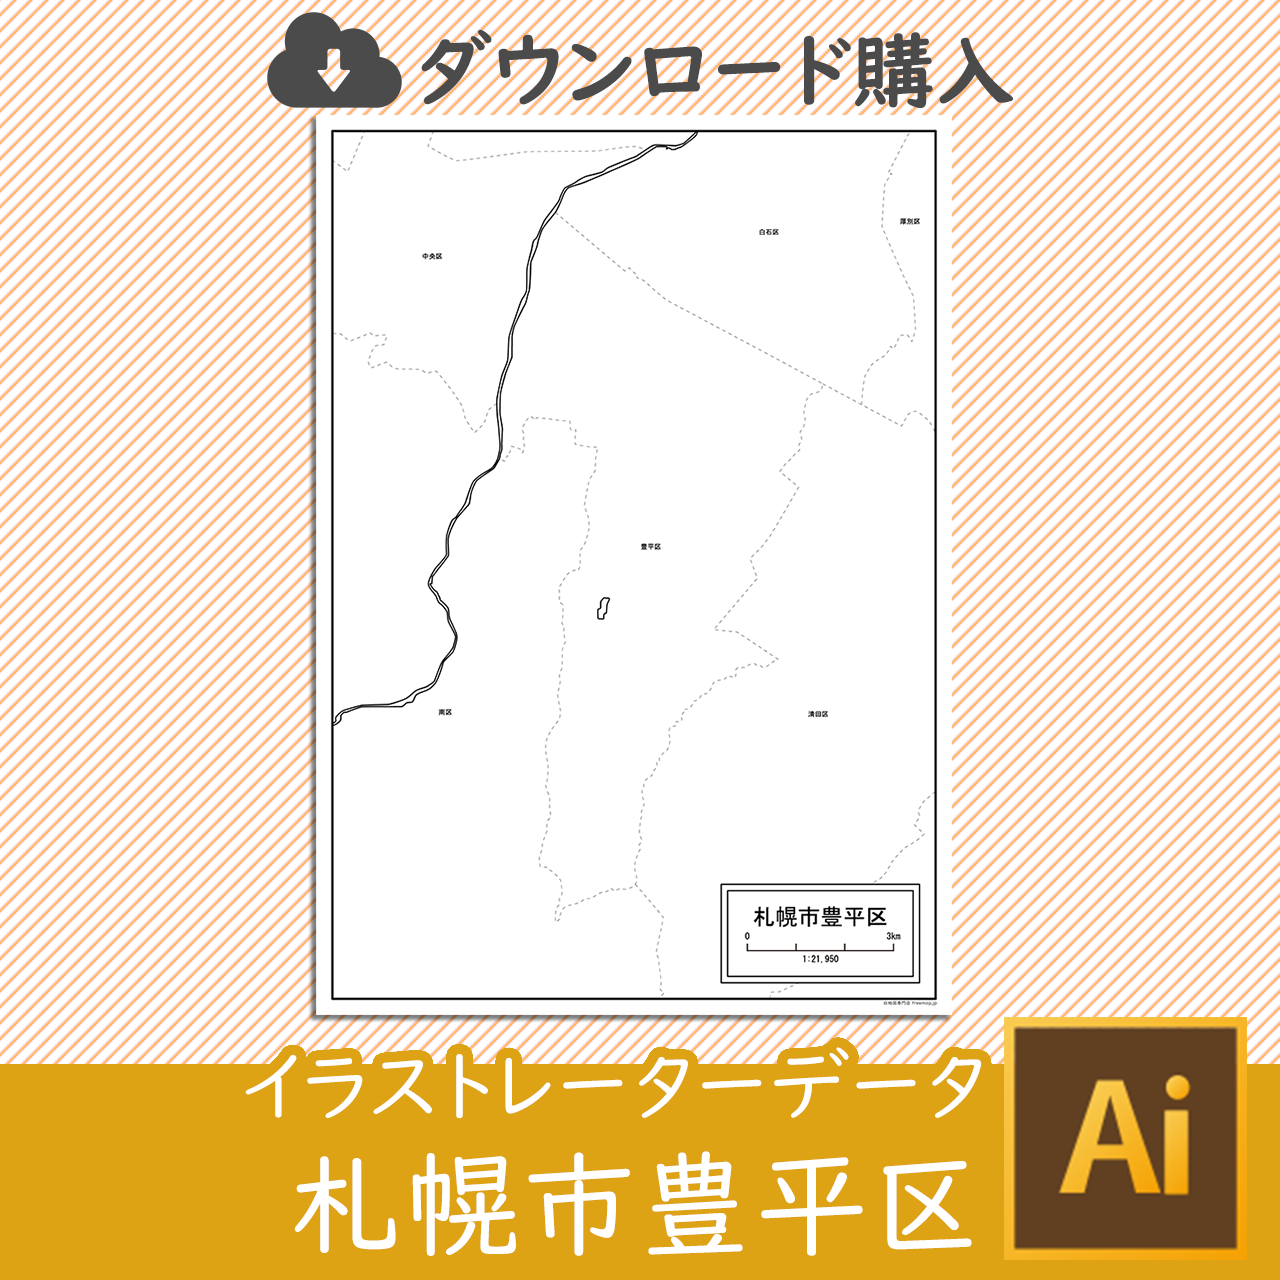 札幌市豊平区のaiデータのサムネイル画像